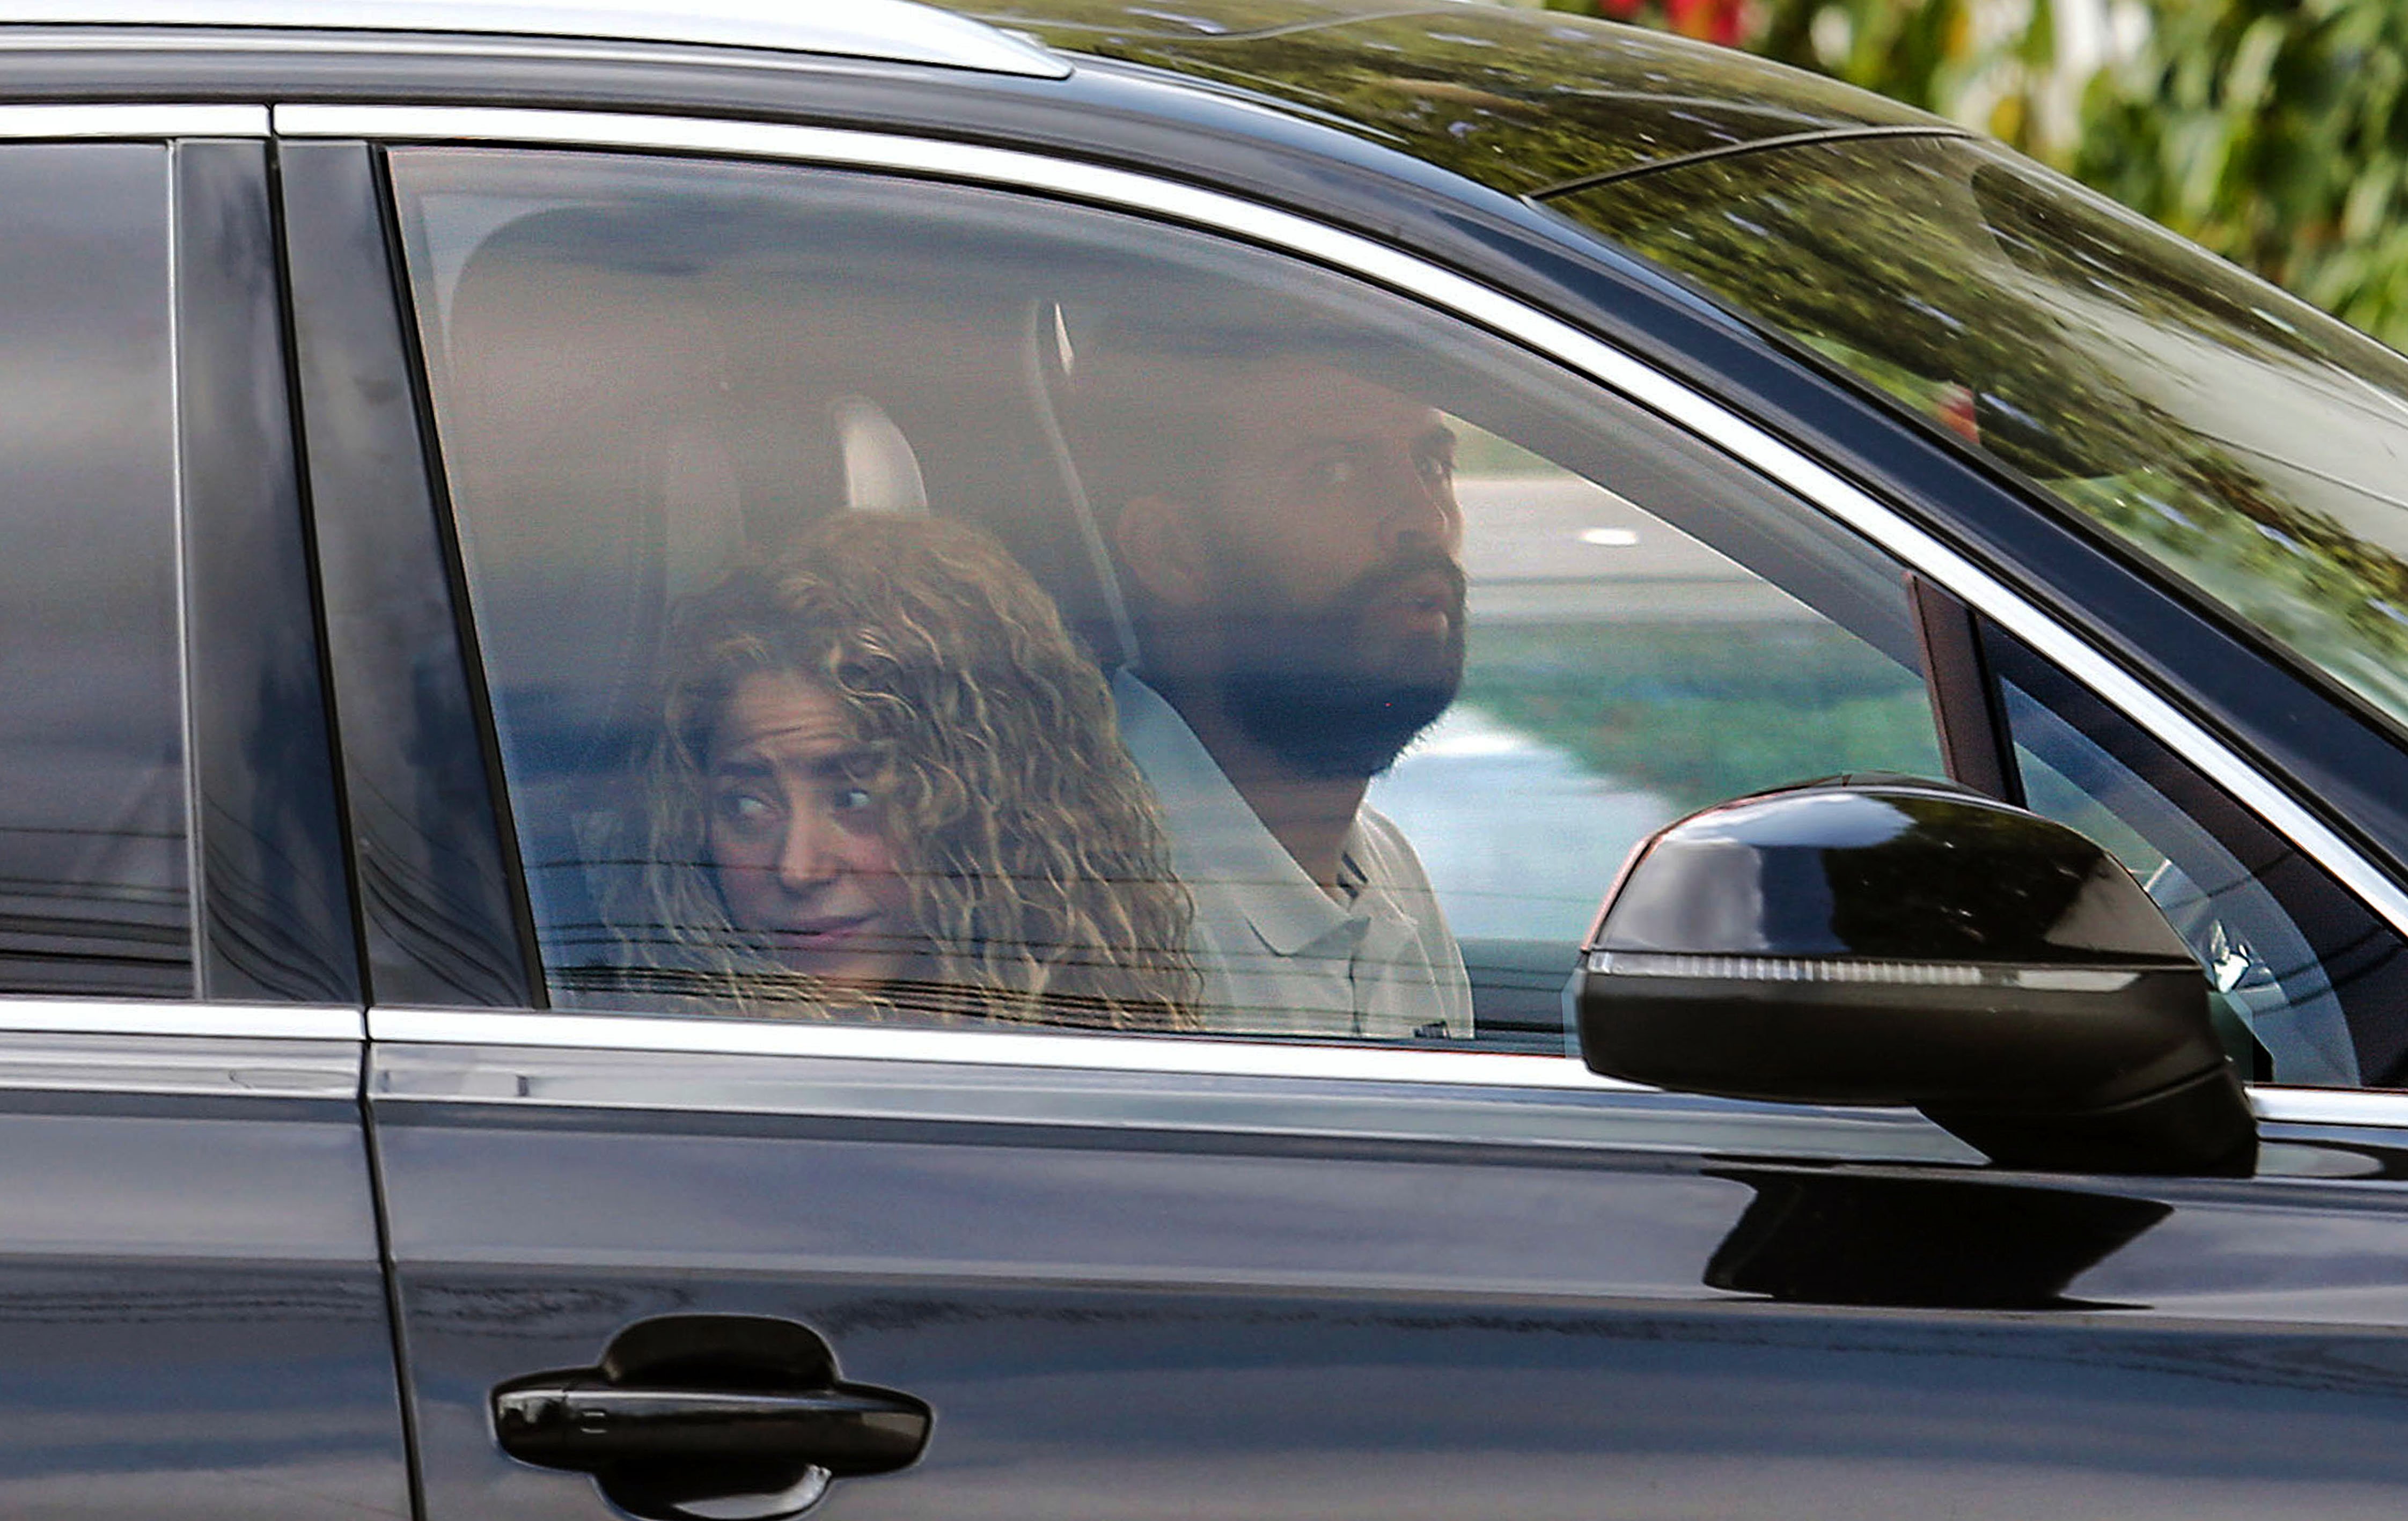 Drástica decisión de Shakira: quiere irse de Catalunya y "habrá guerra" contra Piqué